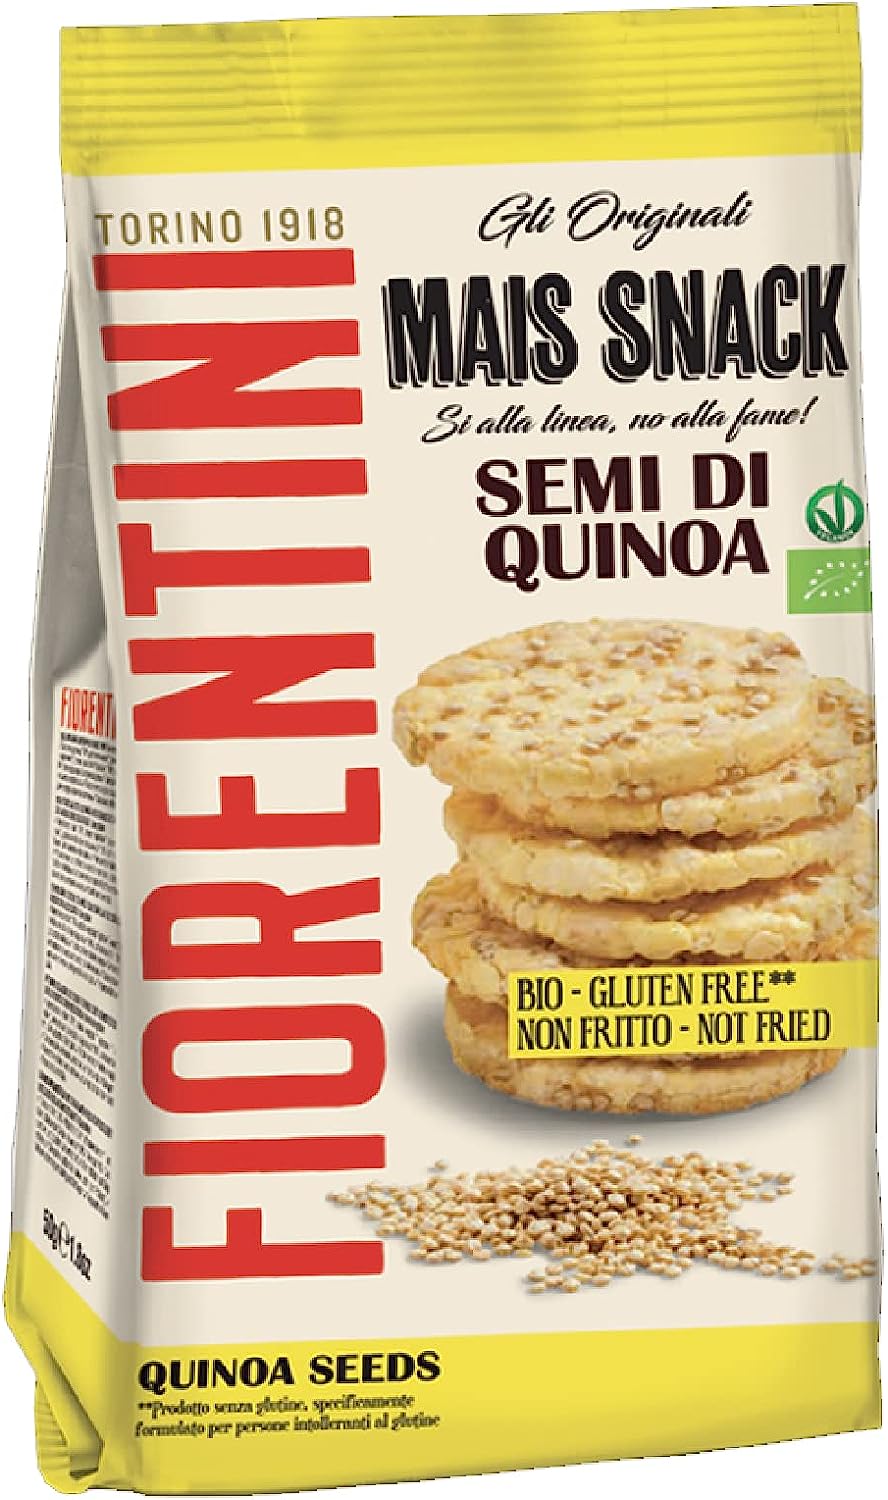 Fiorentini bio gluten-free corn galette with quinoa seeds, vegan